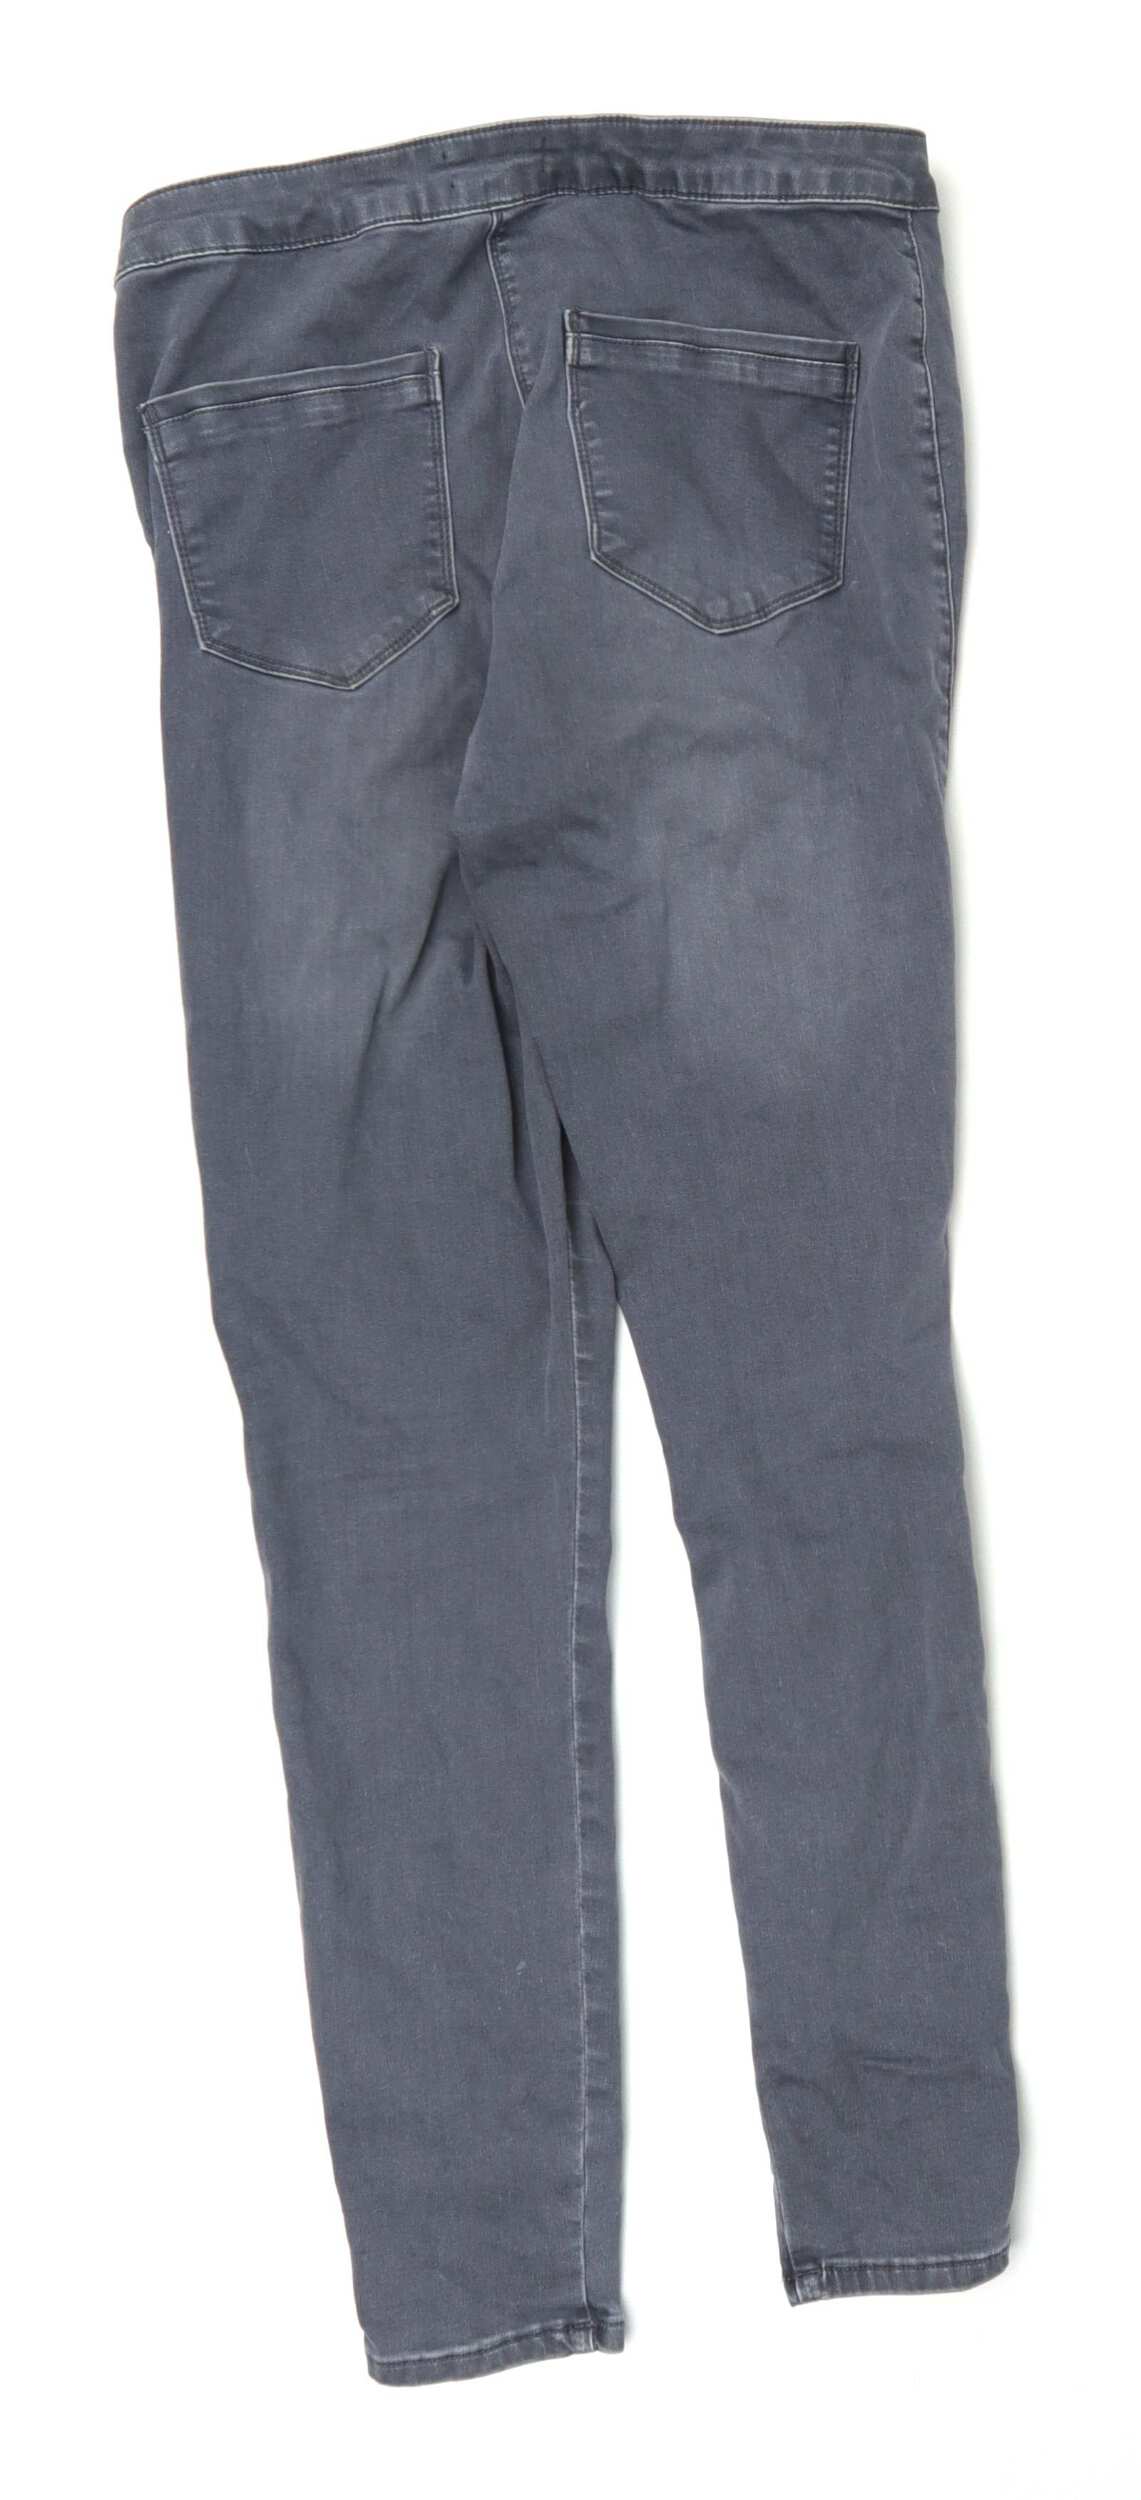 grey jeans matalan